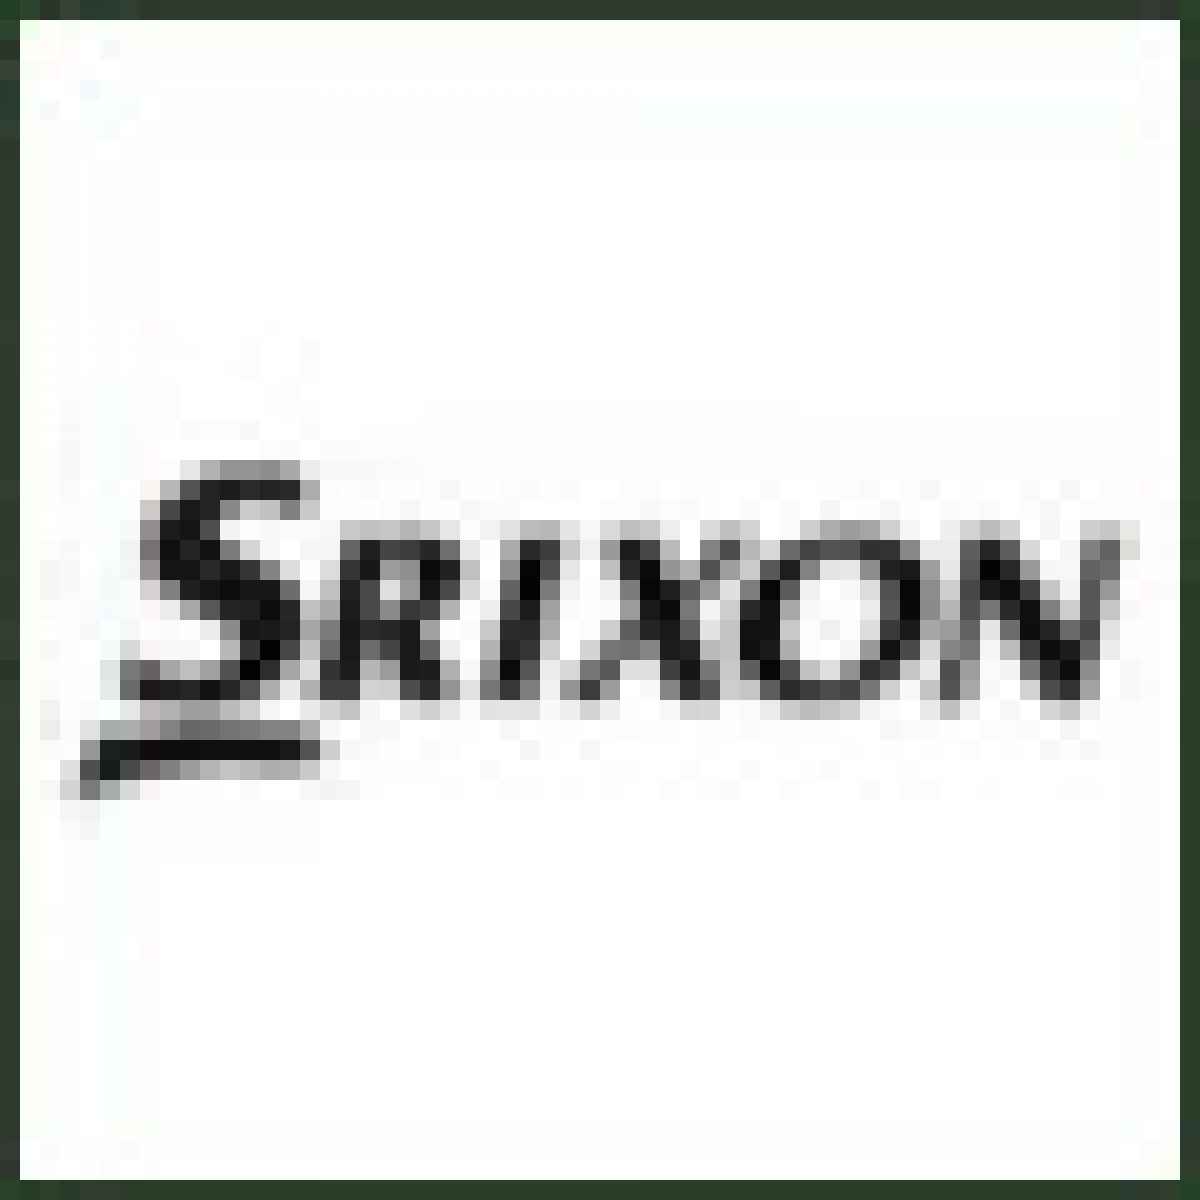 Srixon I-302 irons